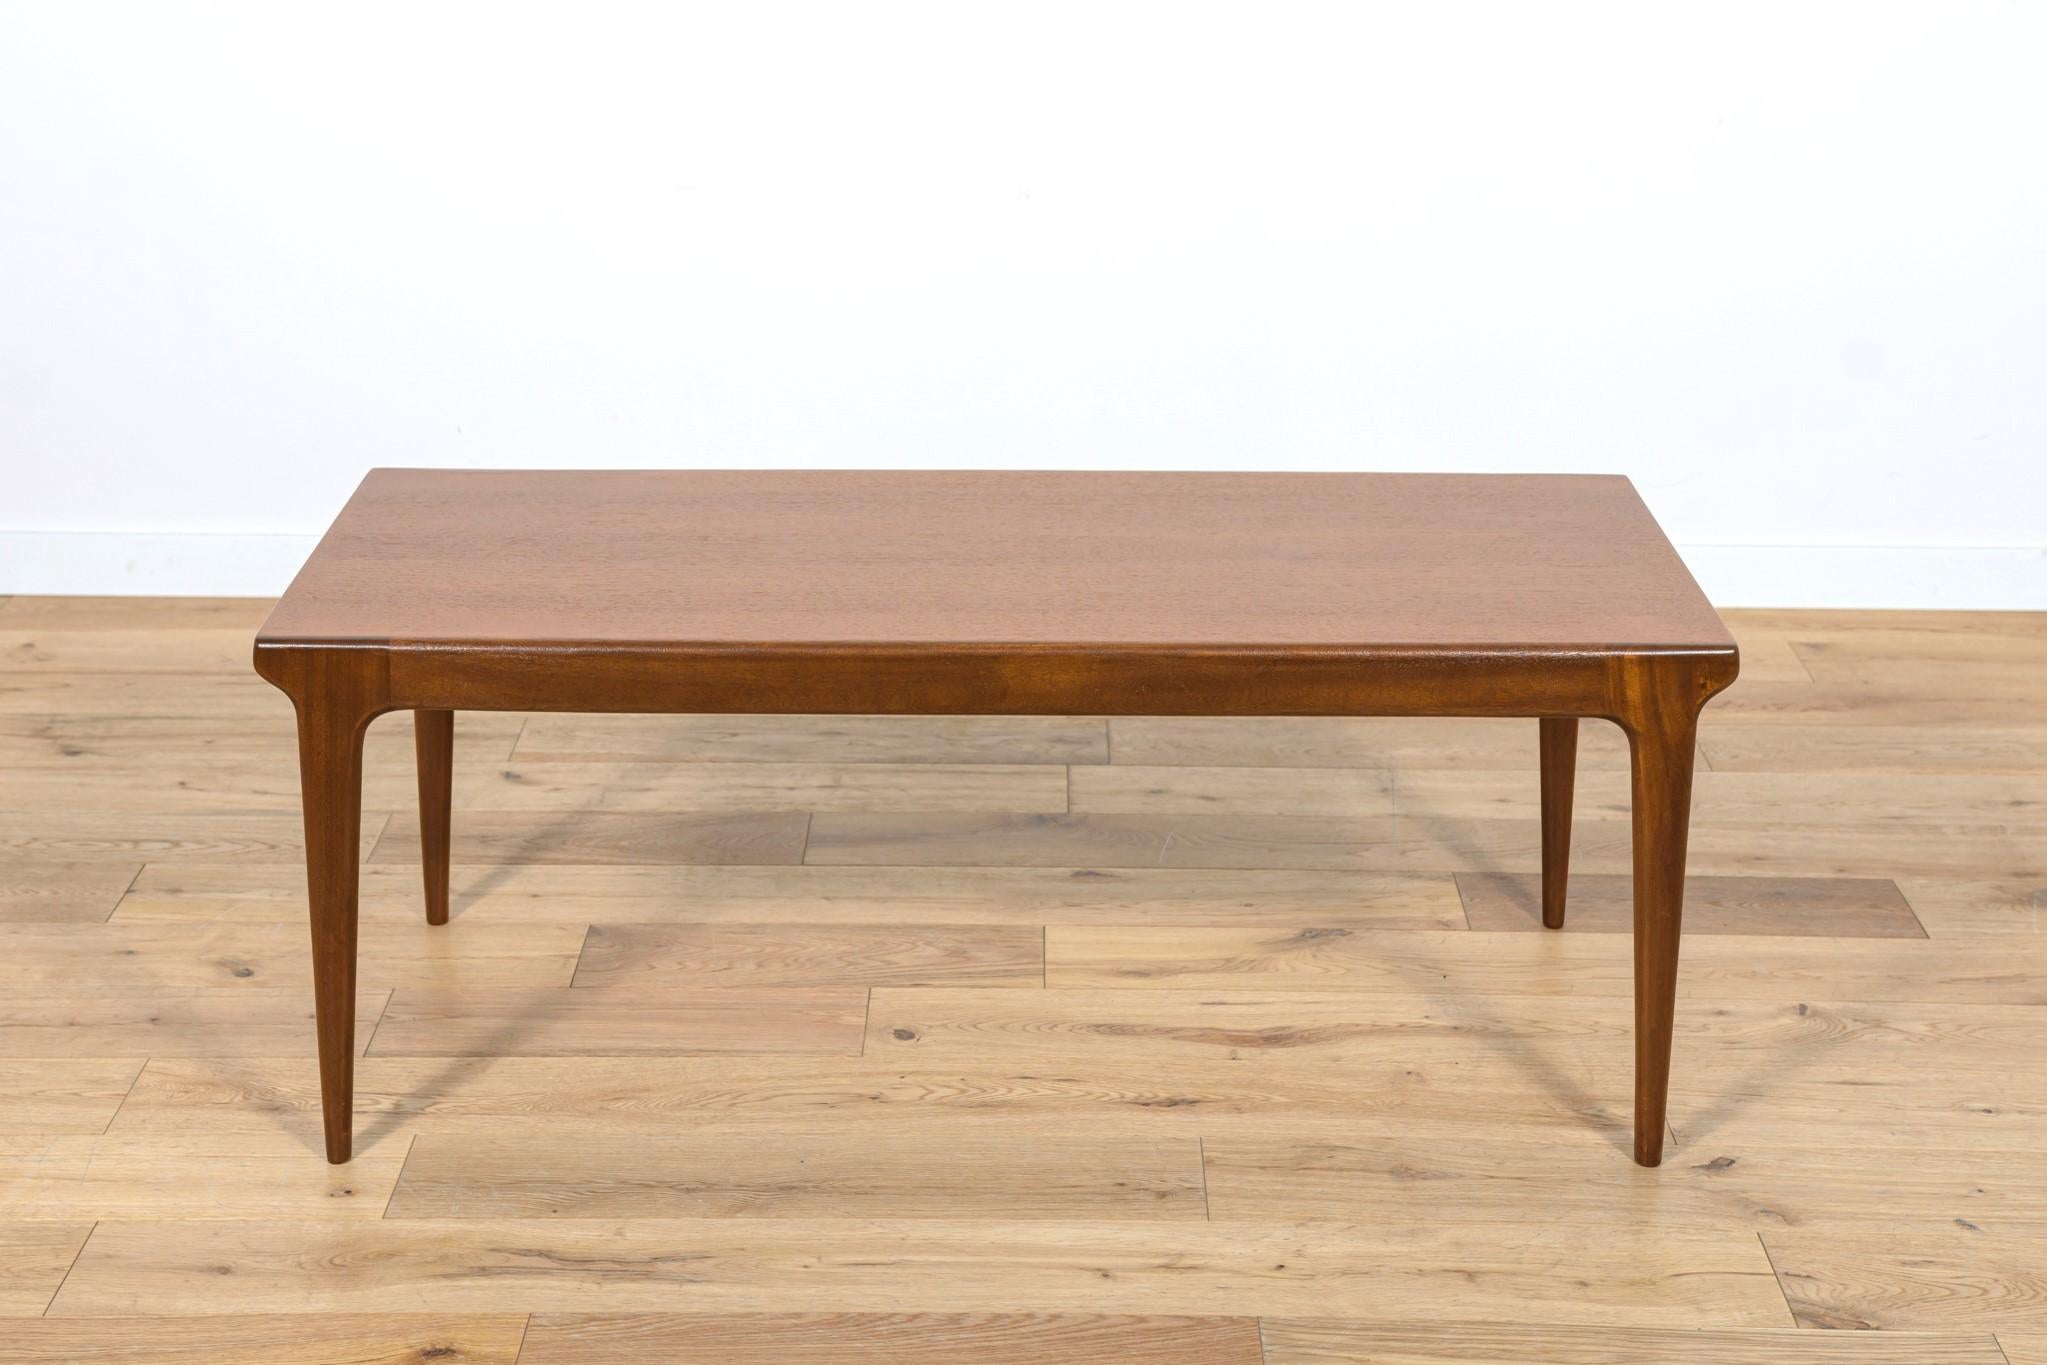 Cette table basse en teck a été fabriquée par Younger Ltd. dans les années 1960 en Grande-Bretagne. Une table en teck à la forme légère et sublime et à la haute facture de menuiserie. La table a été entièrement rénovée. Les éléments en teck ont été